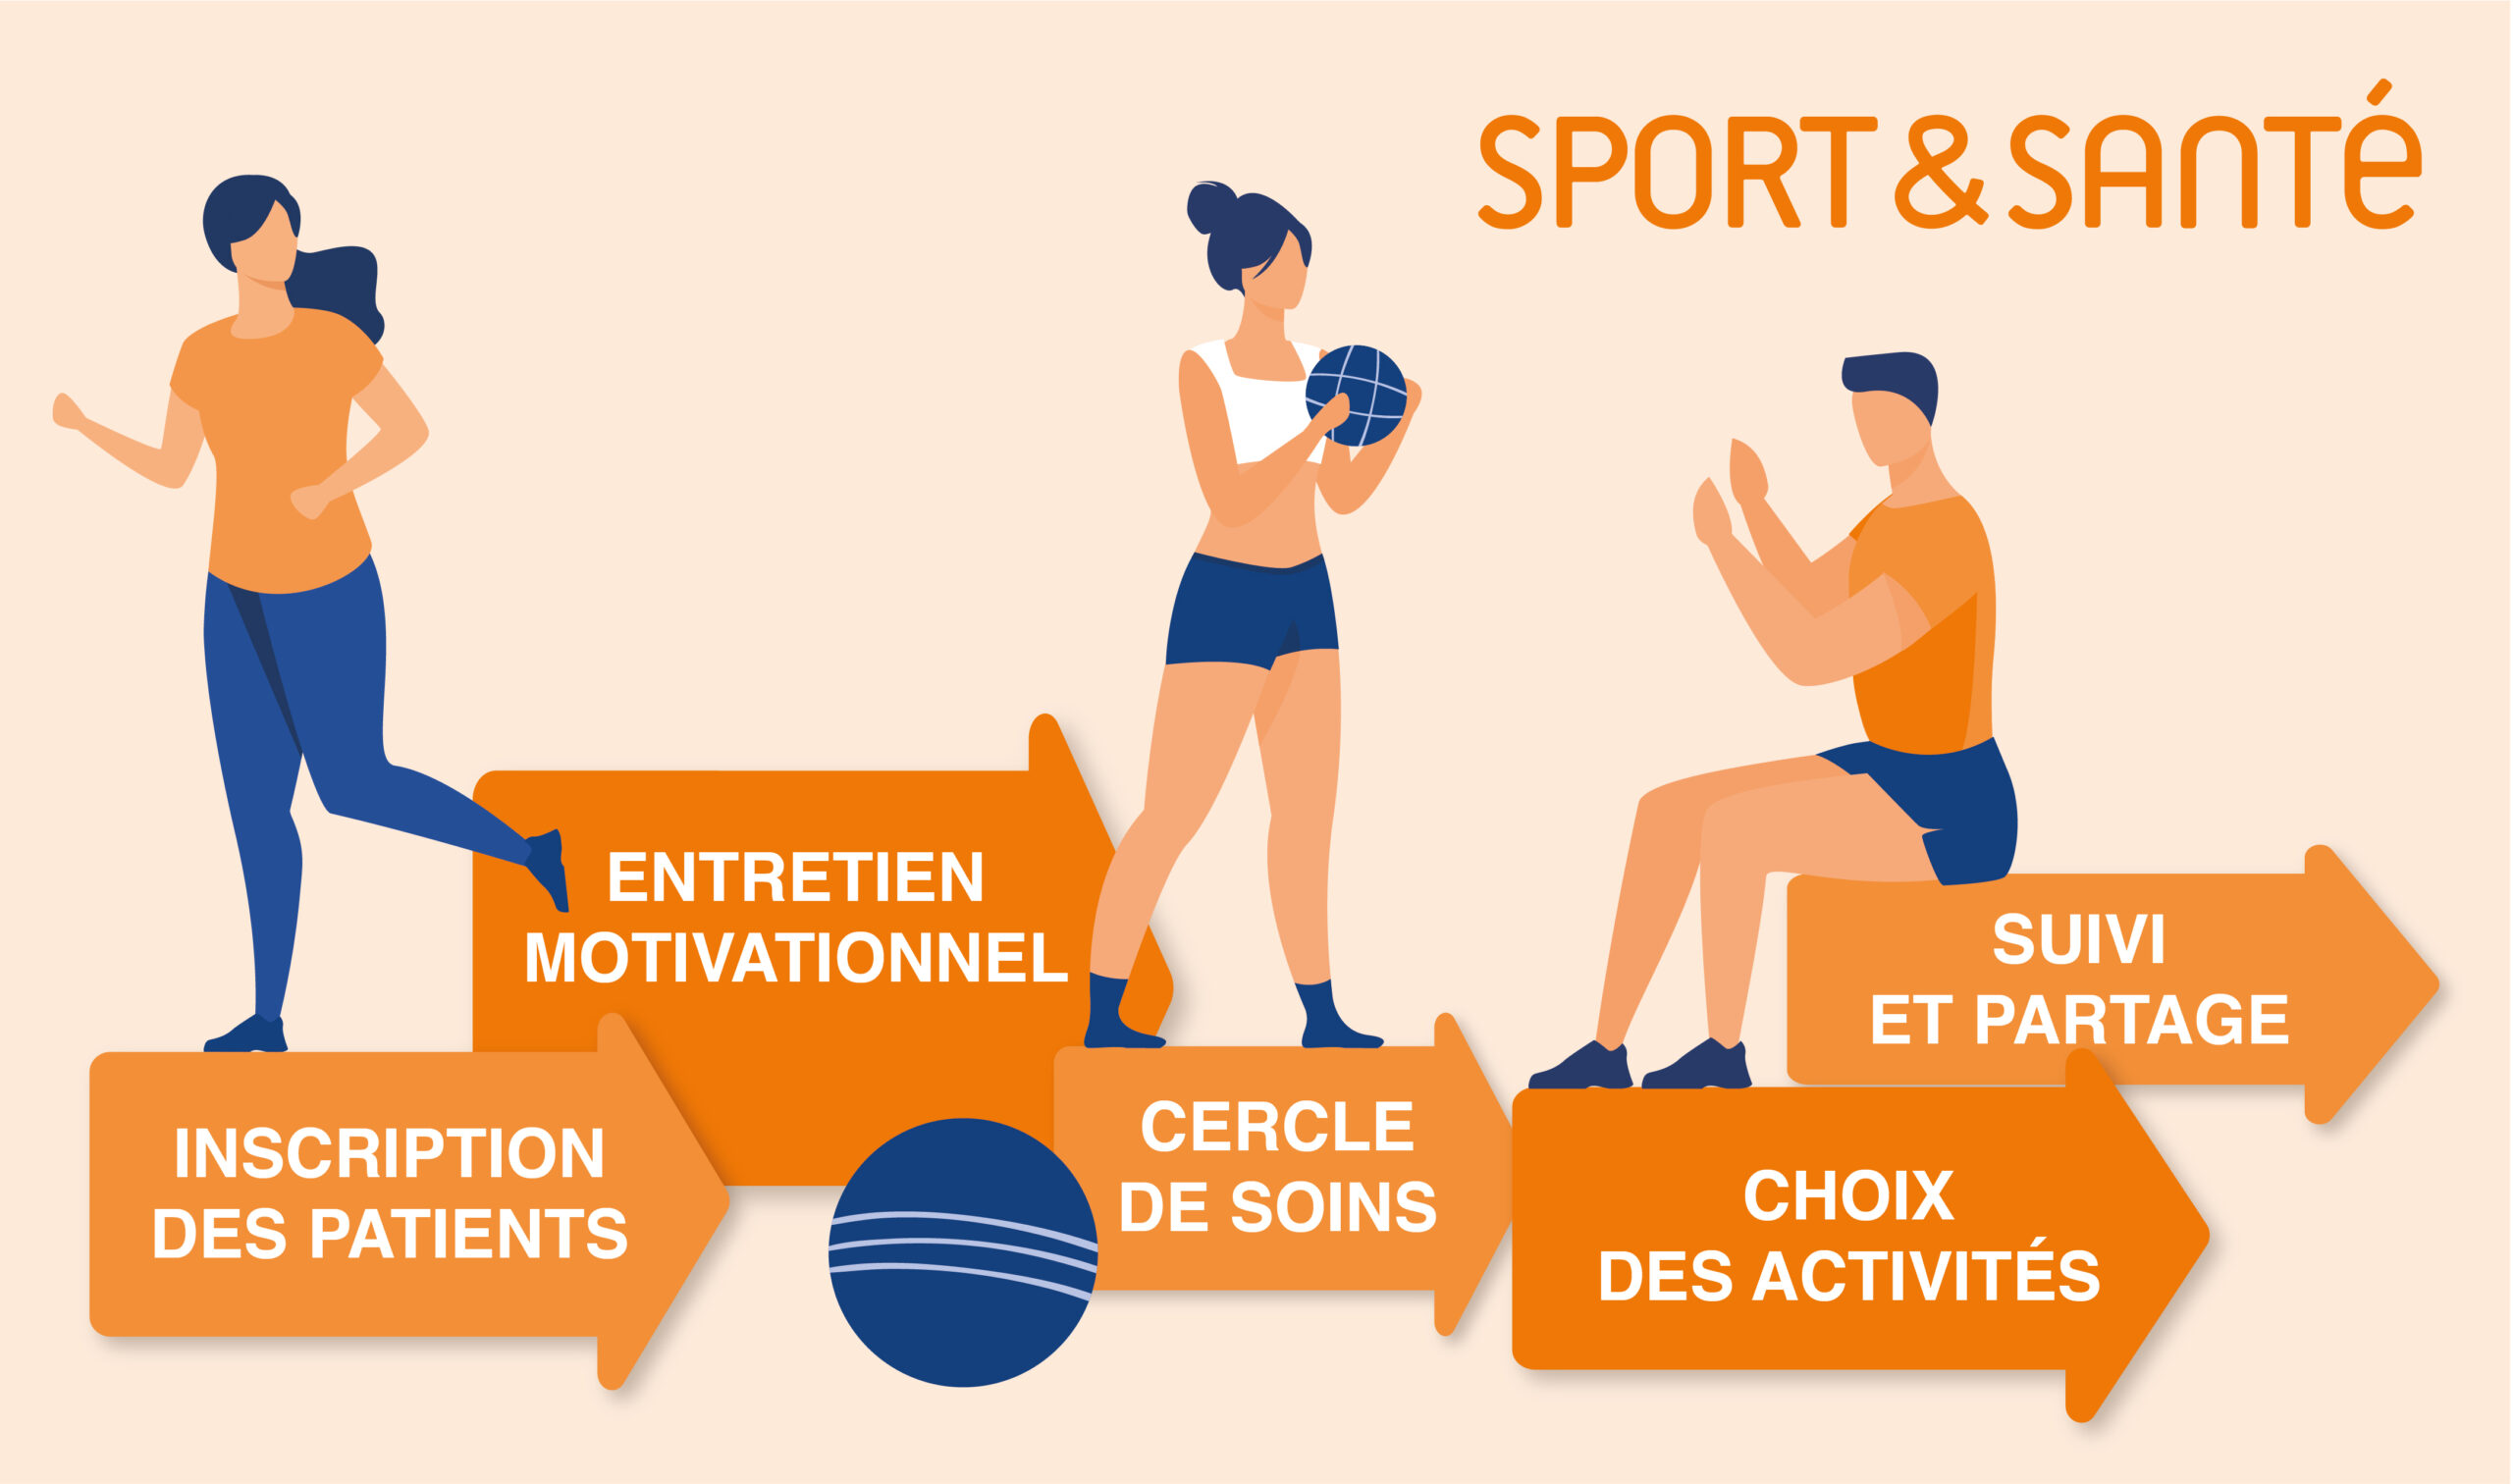 Le réseau sport & santé propose un parcours d accompagnement sportif pour la santé